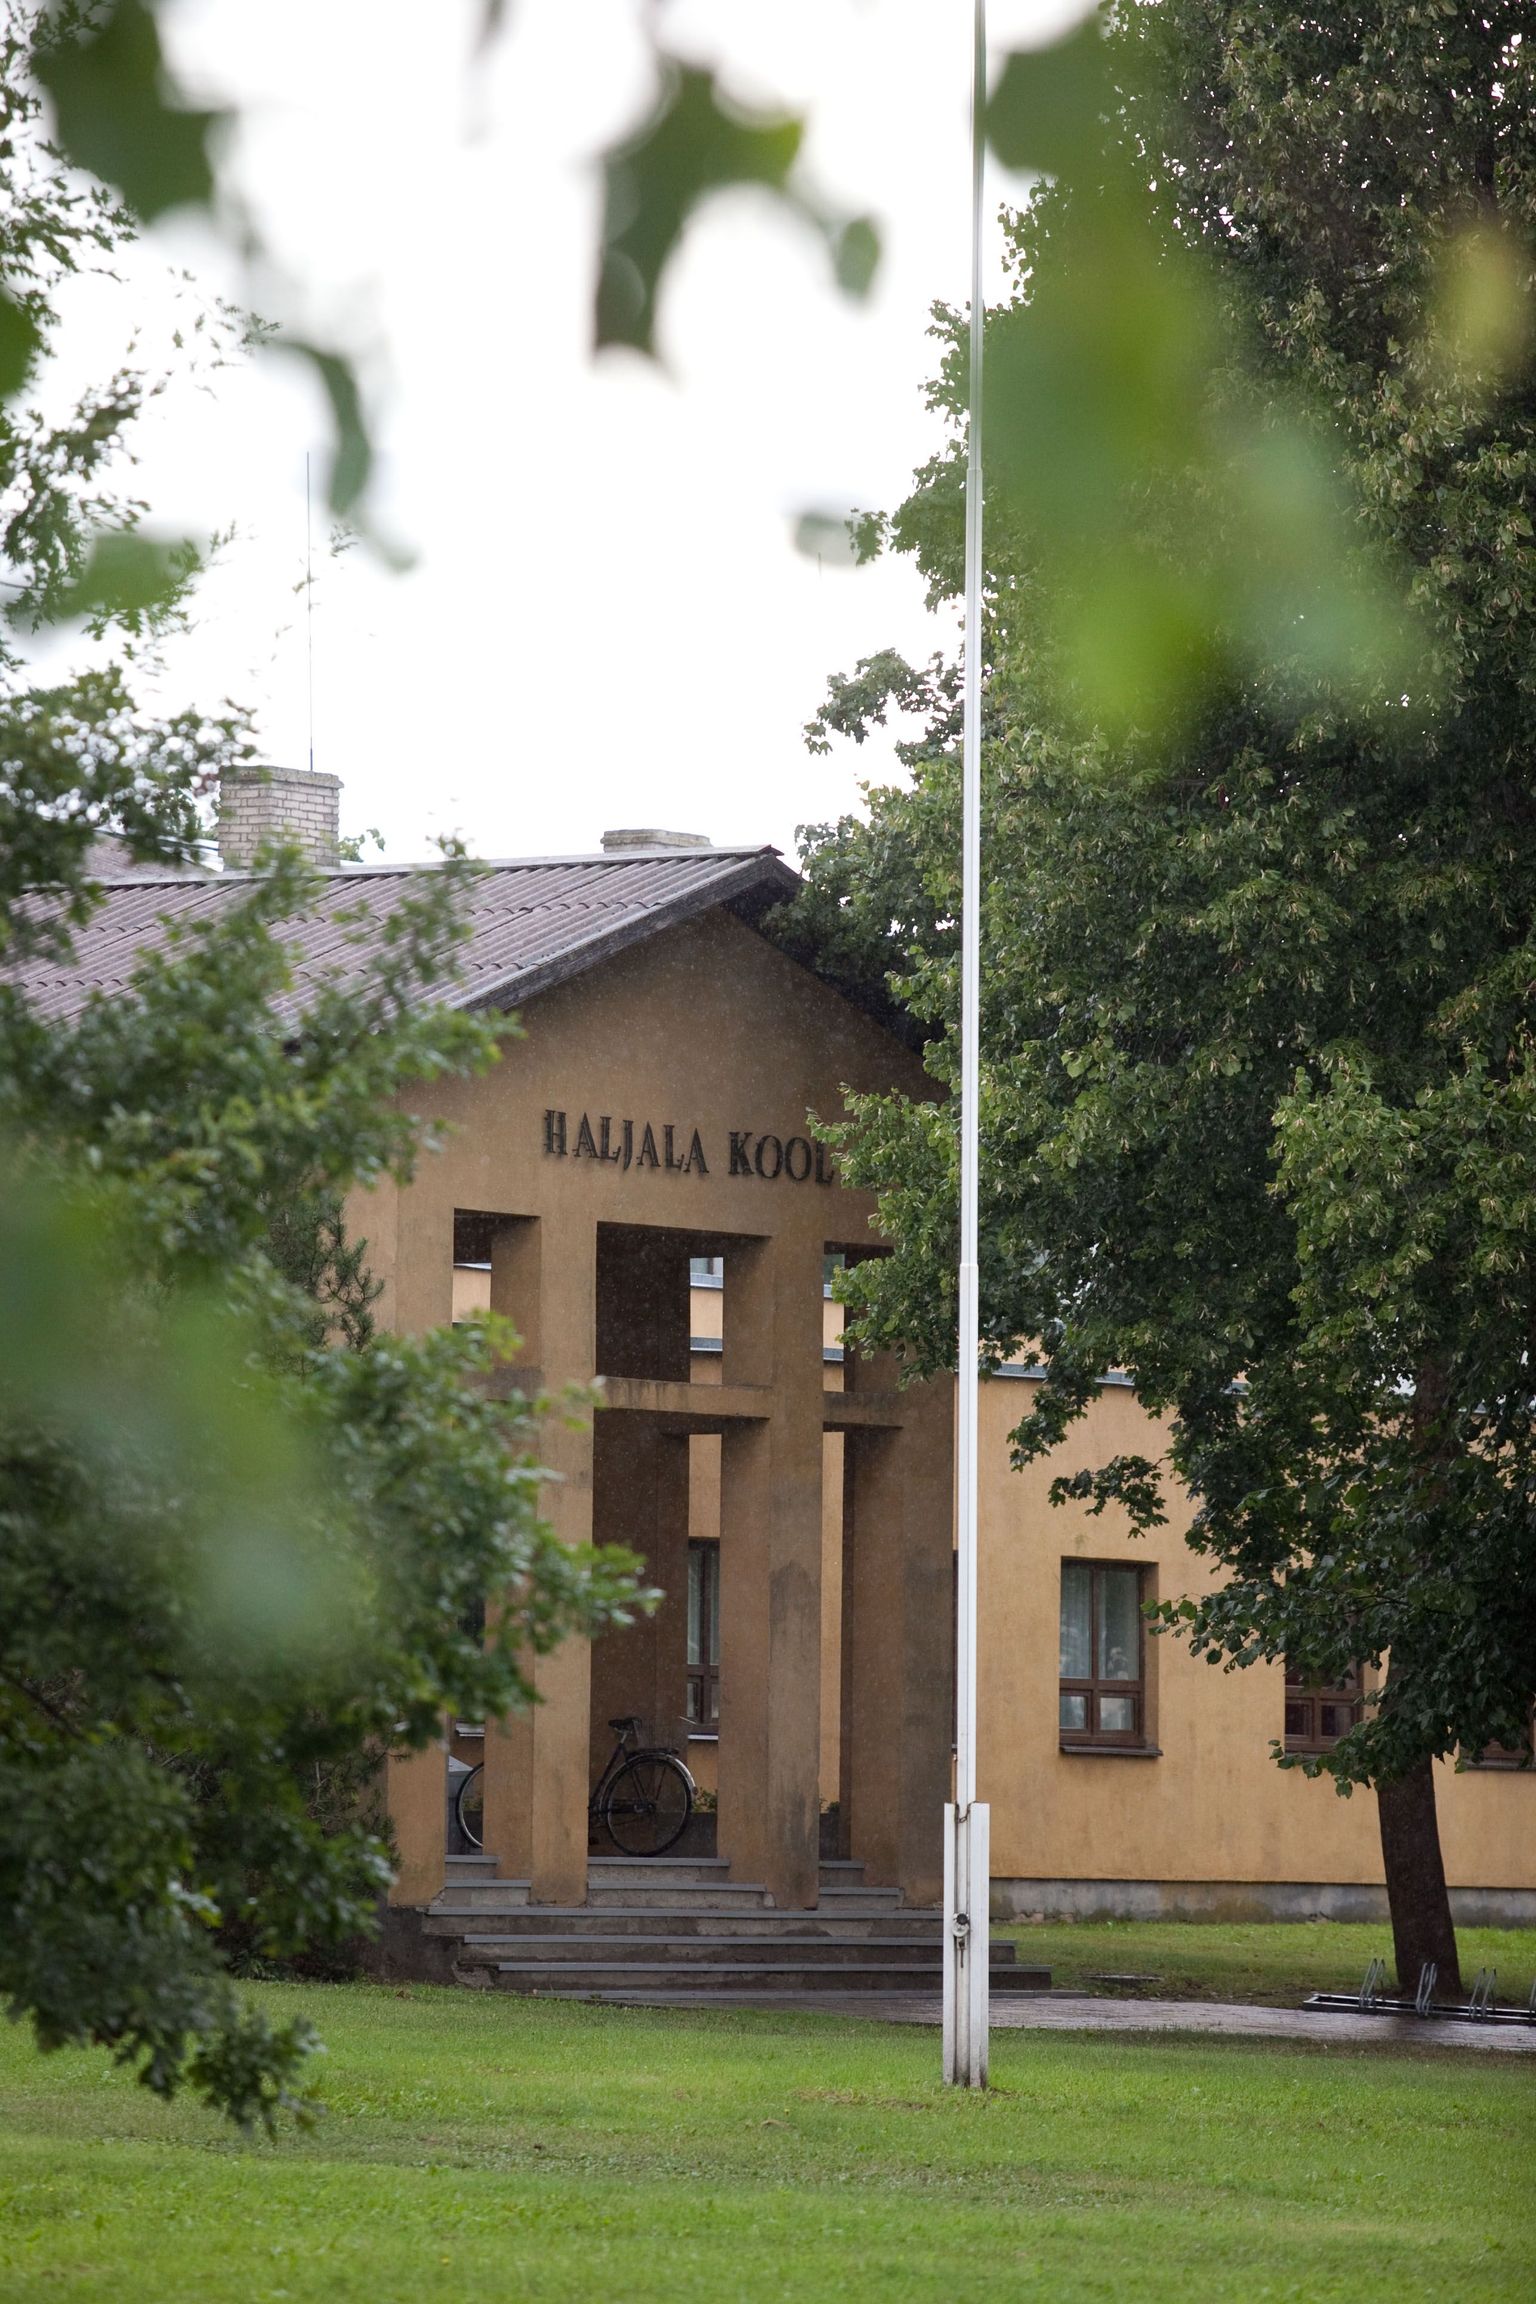 Eesti Õpetaja ausammas püstitatakse Haljala kooli juurde, kust idee on pärit.